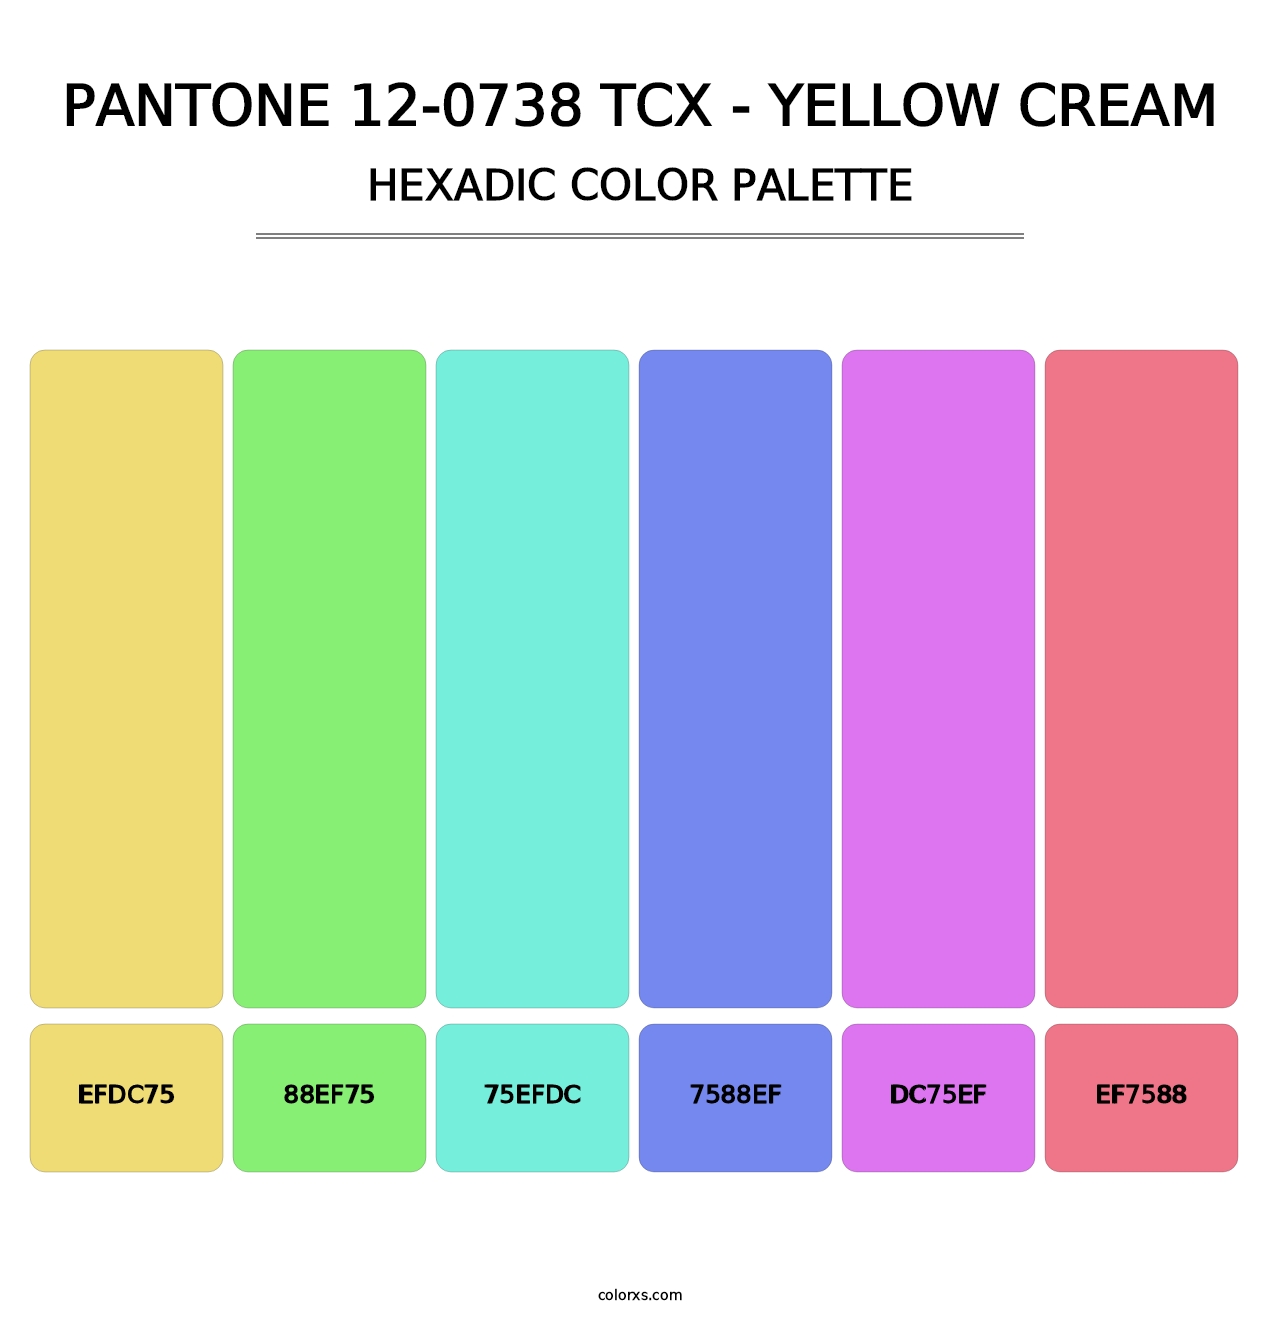 PANTONE 12-0738 TCX - Yellow Cream - Hexadic Color Palette